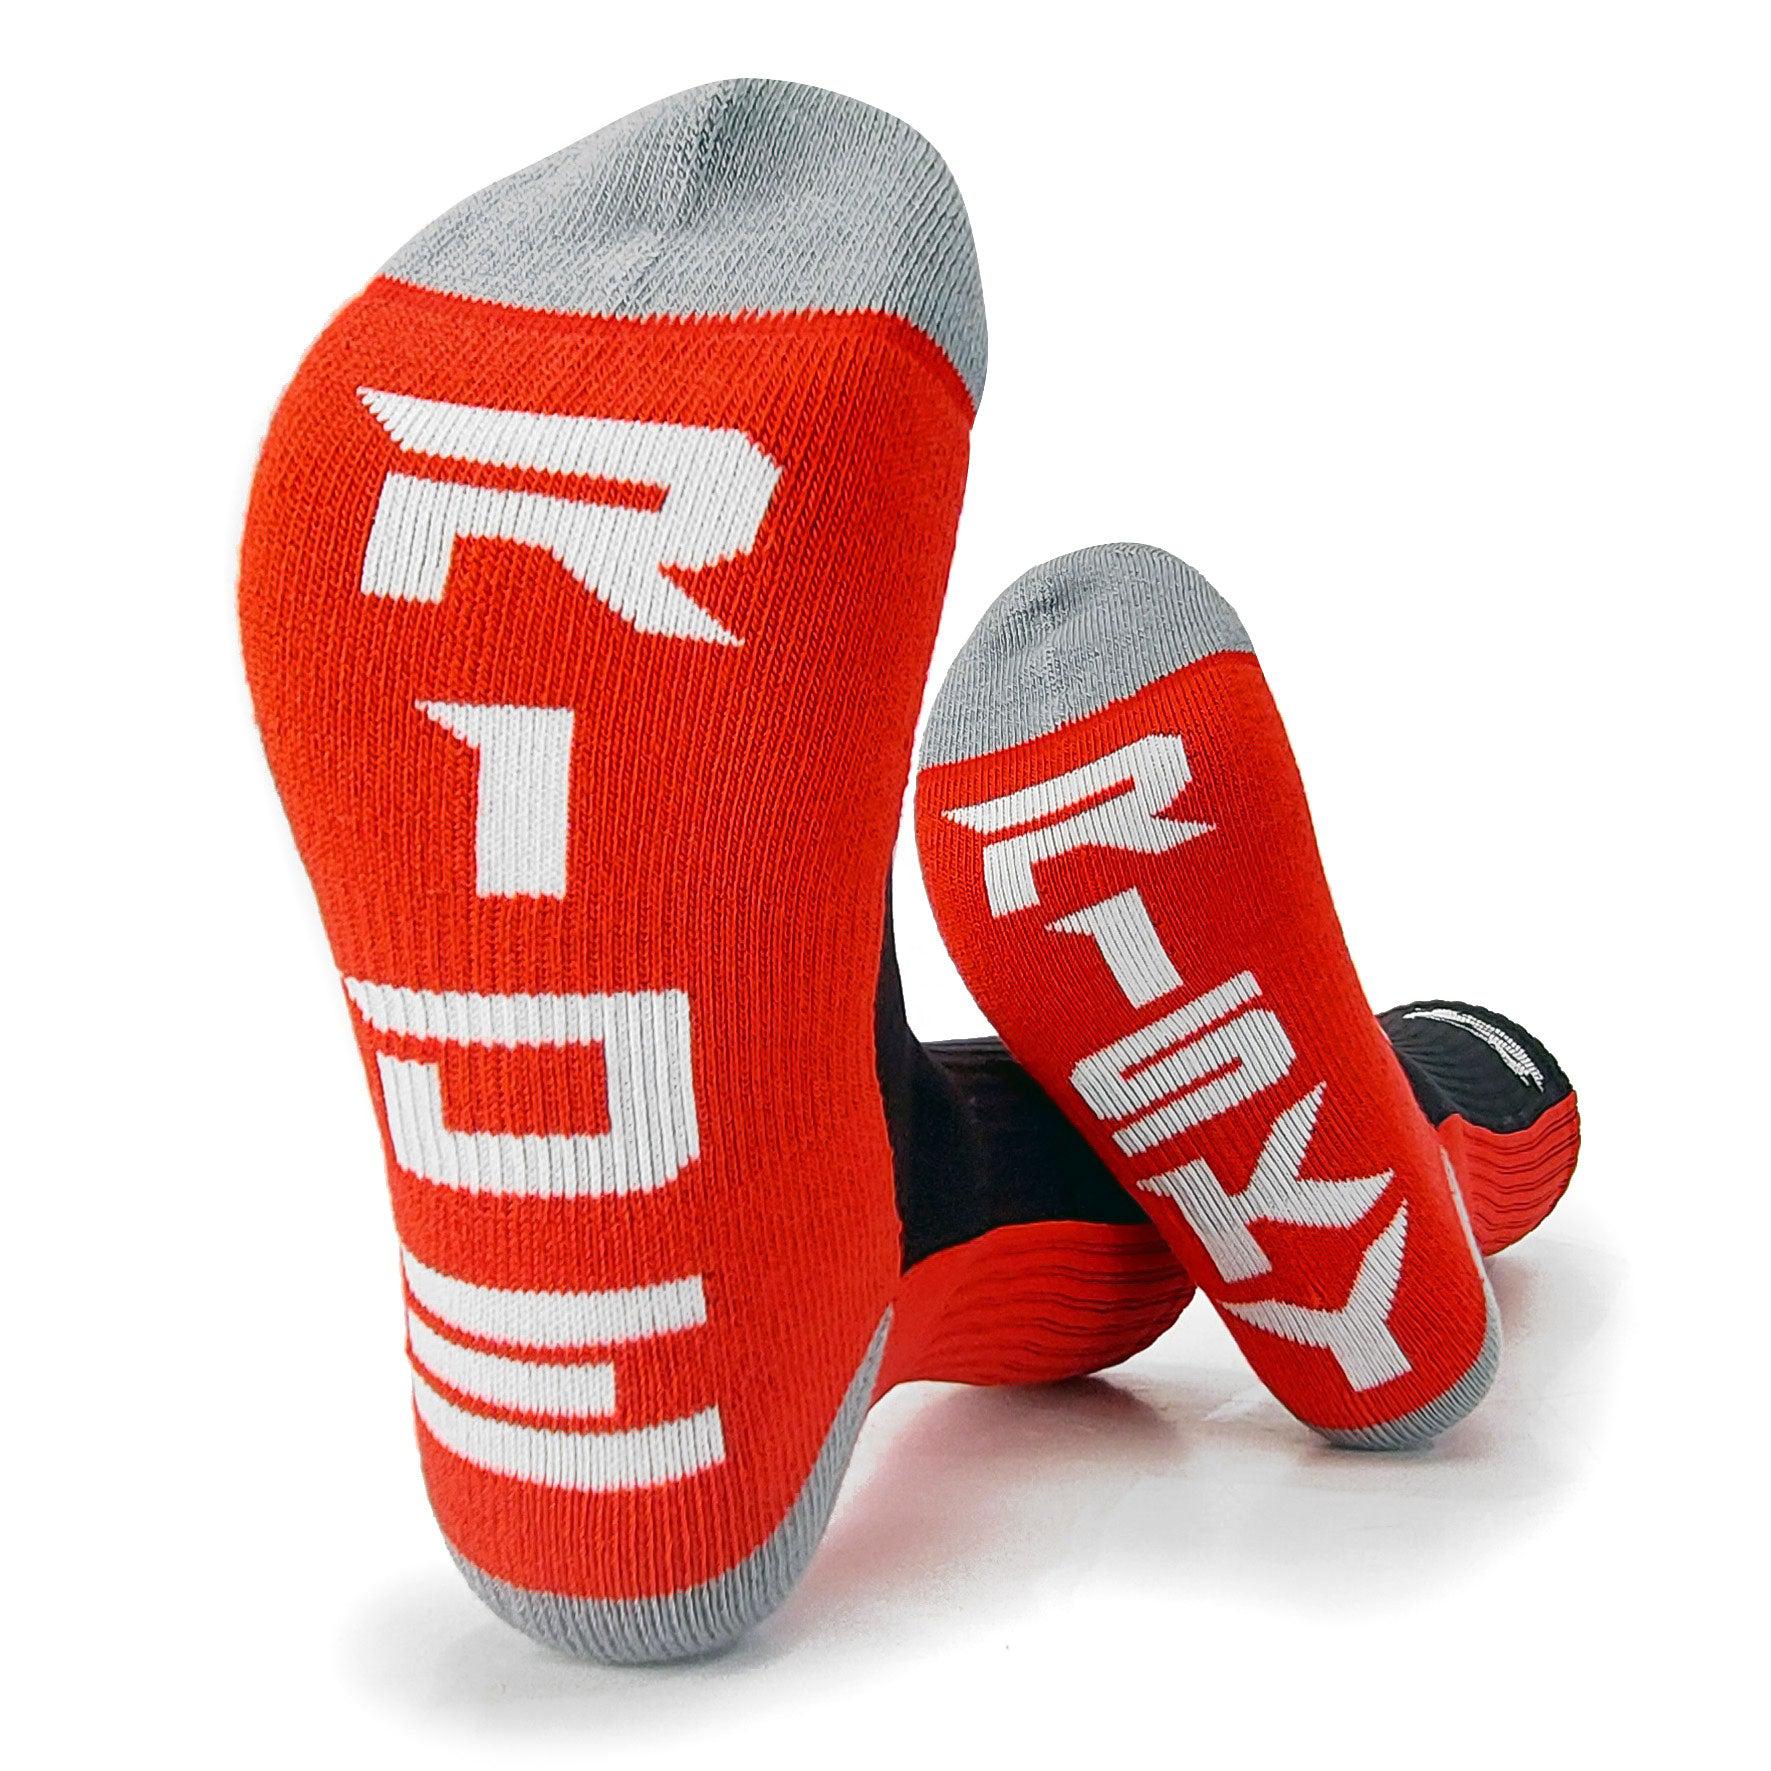 Ride Risky - Motocross Socks - Bottom of feet - Fuel / Risk Racing